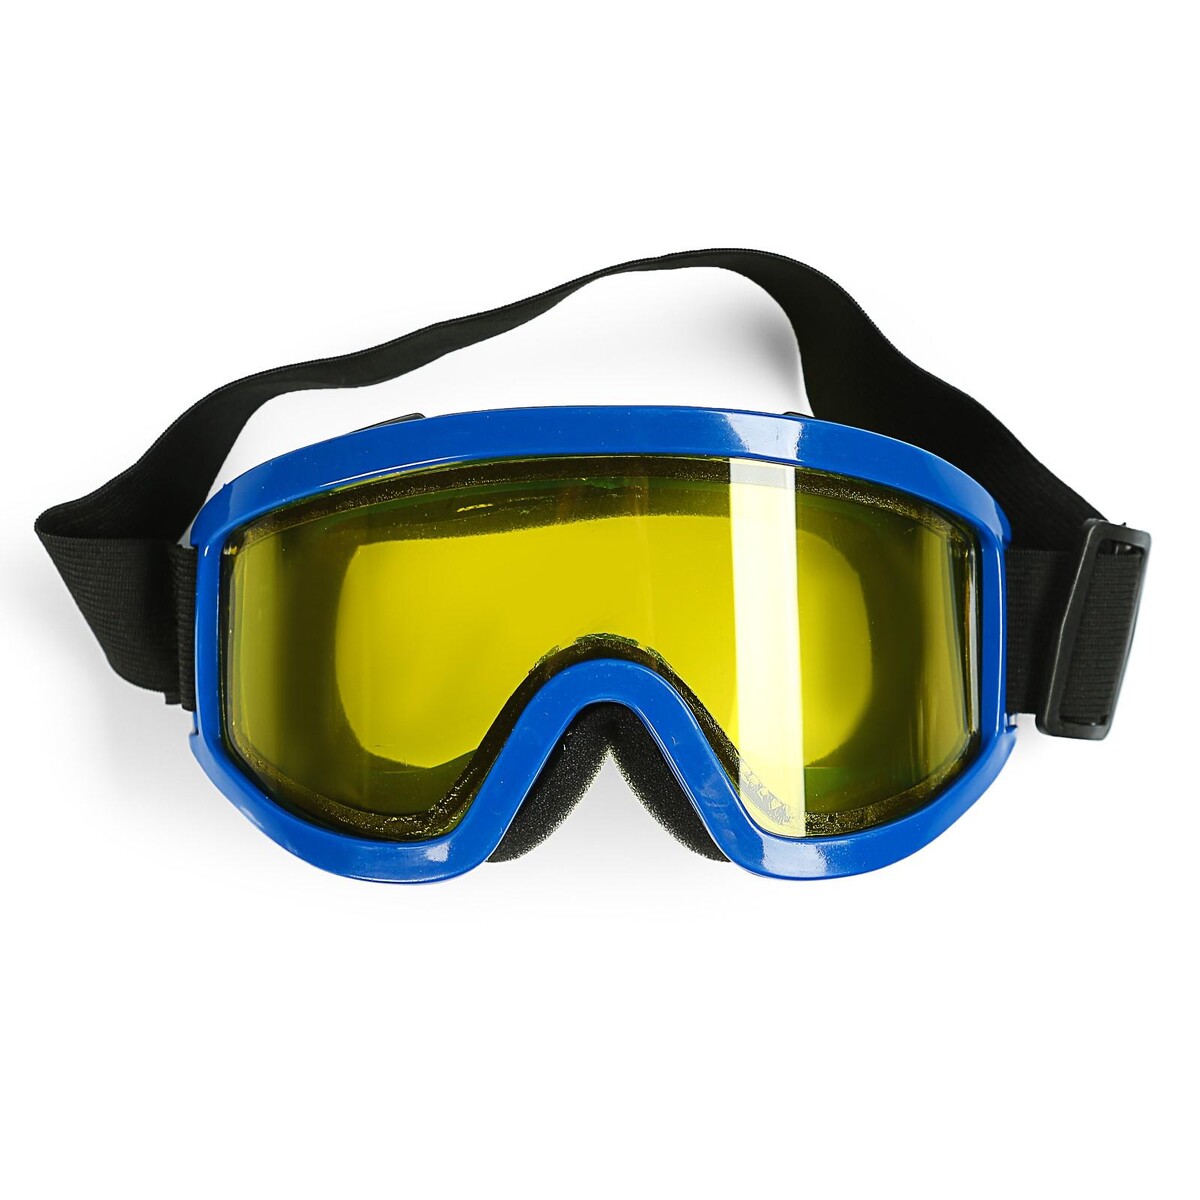 Очки-маска для езды на мототехнике, стекло двухслойное желтое, цвет синий маска для плавания atemi 428 силикон синий